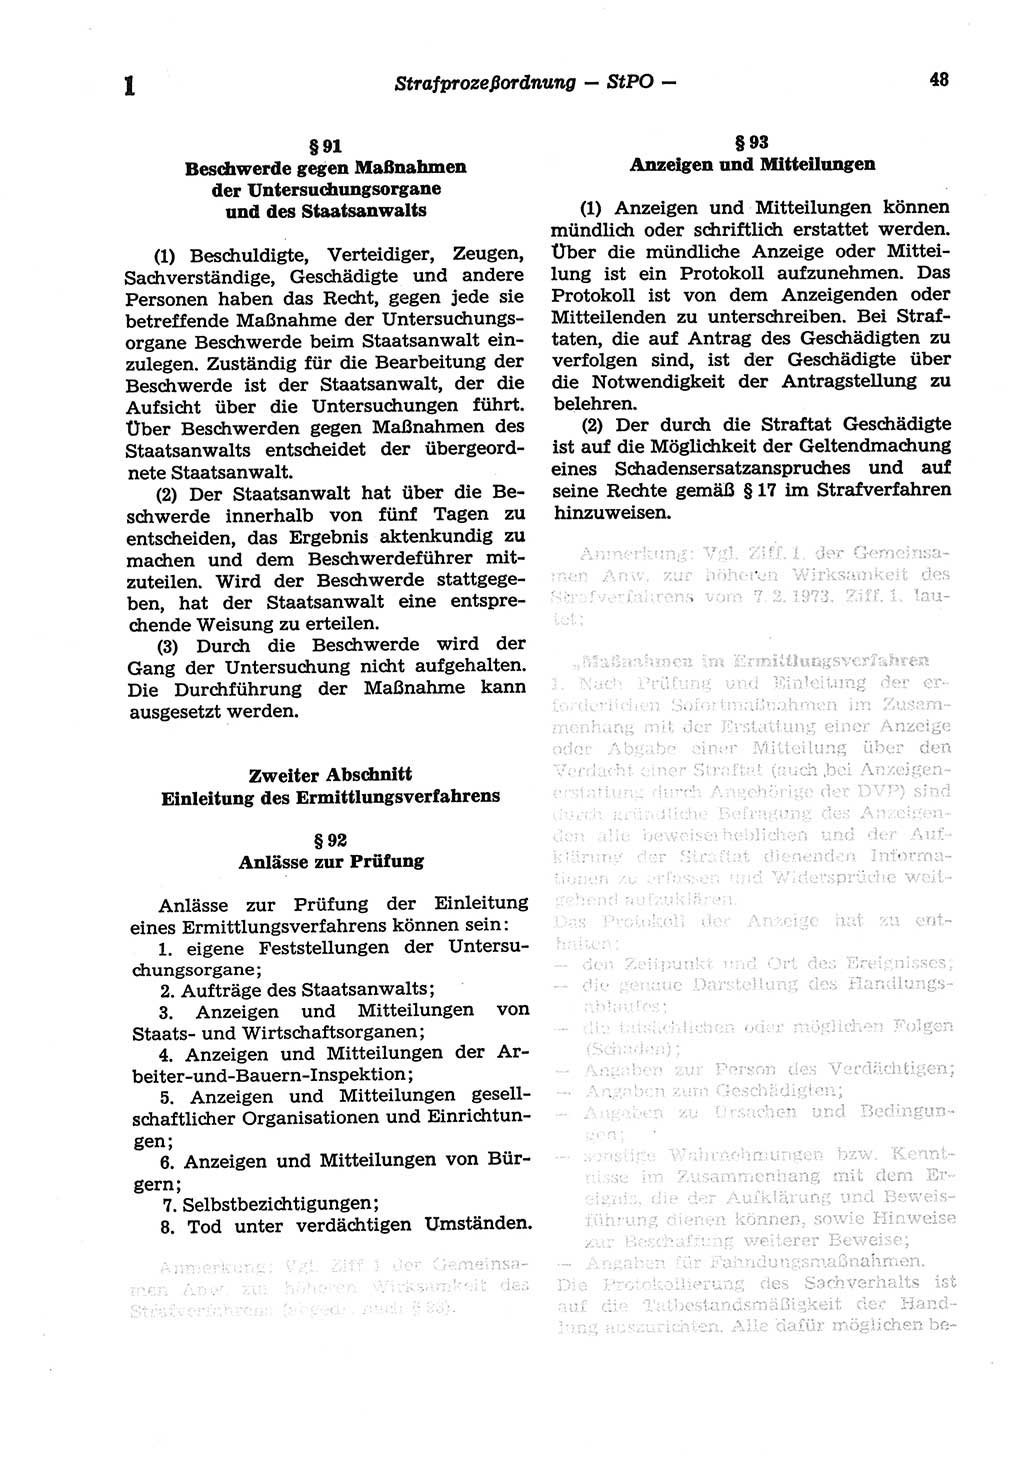 Strafprozeßordnung (StPO) der Deutschen Demokratischen Republik (DDR) sowie angrenzende Gesetze und Bestimmungen 1977, Seite 48 (StPO DDR Ges. Best. 1977, S. 48)